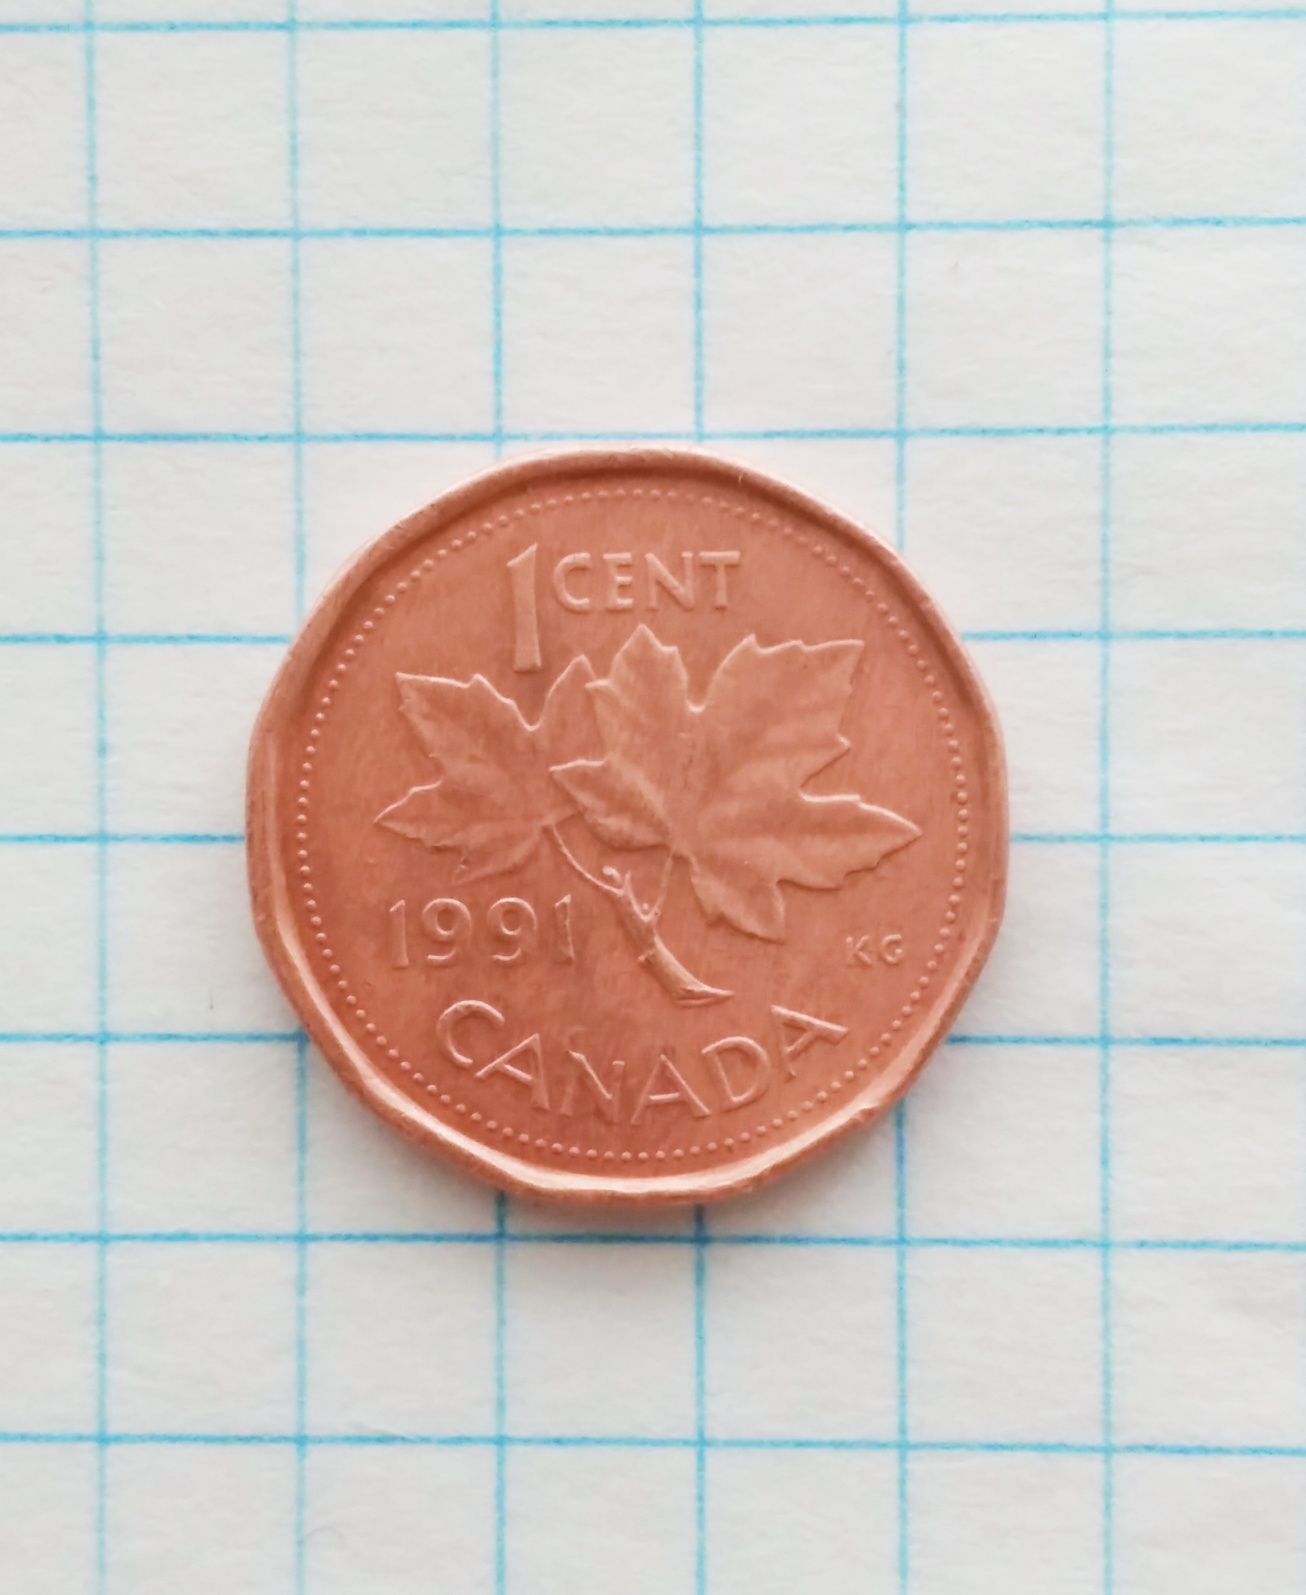 Продам монету 1 CENT CANADA 1991 года. 
Отправлю О